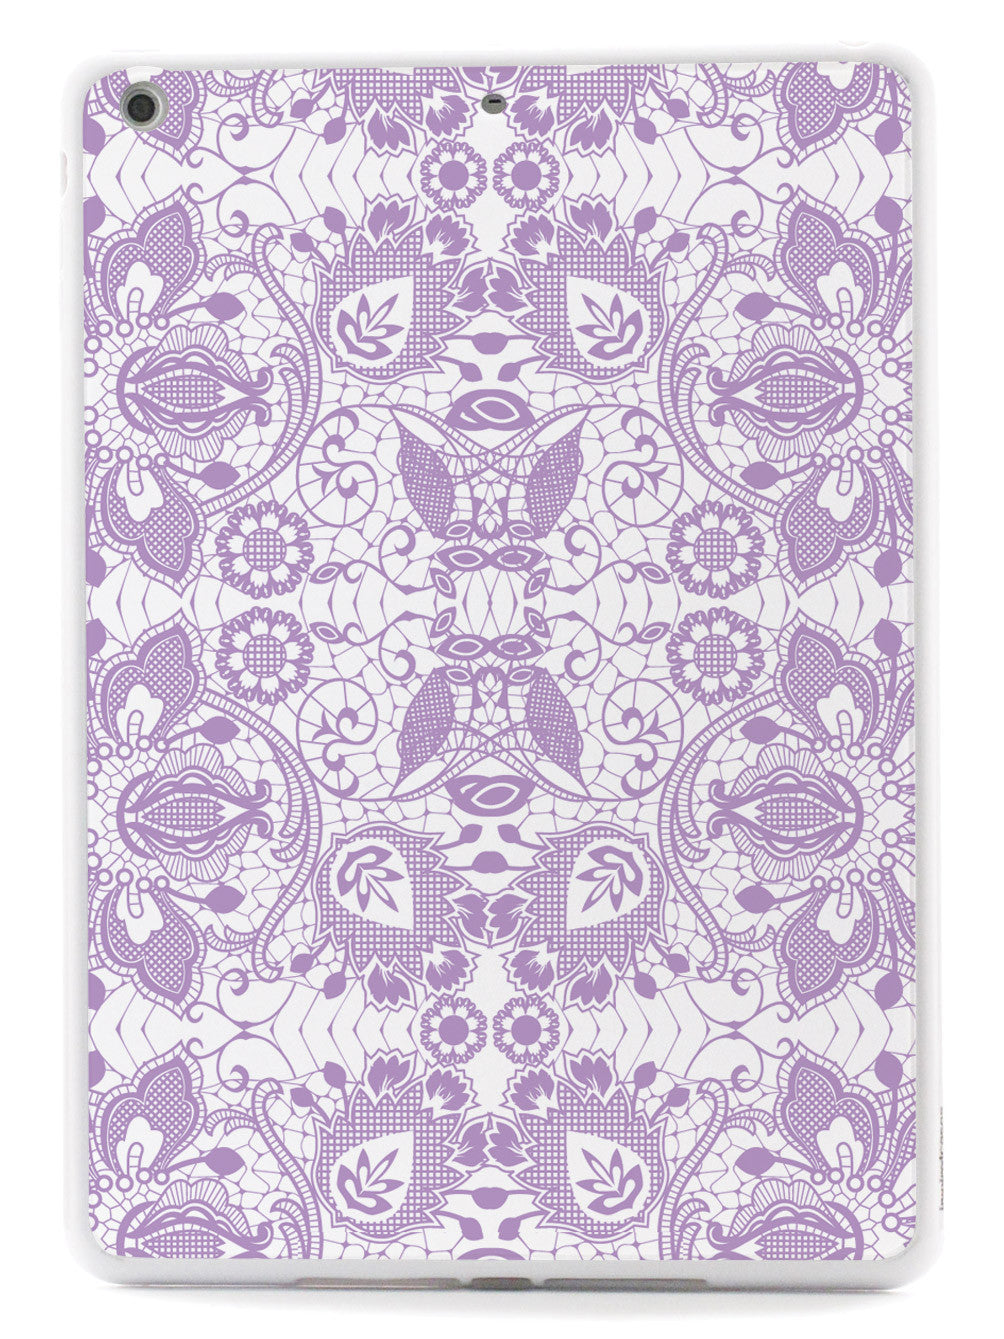 Lace Pattern - Lavender Case